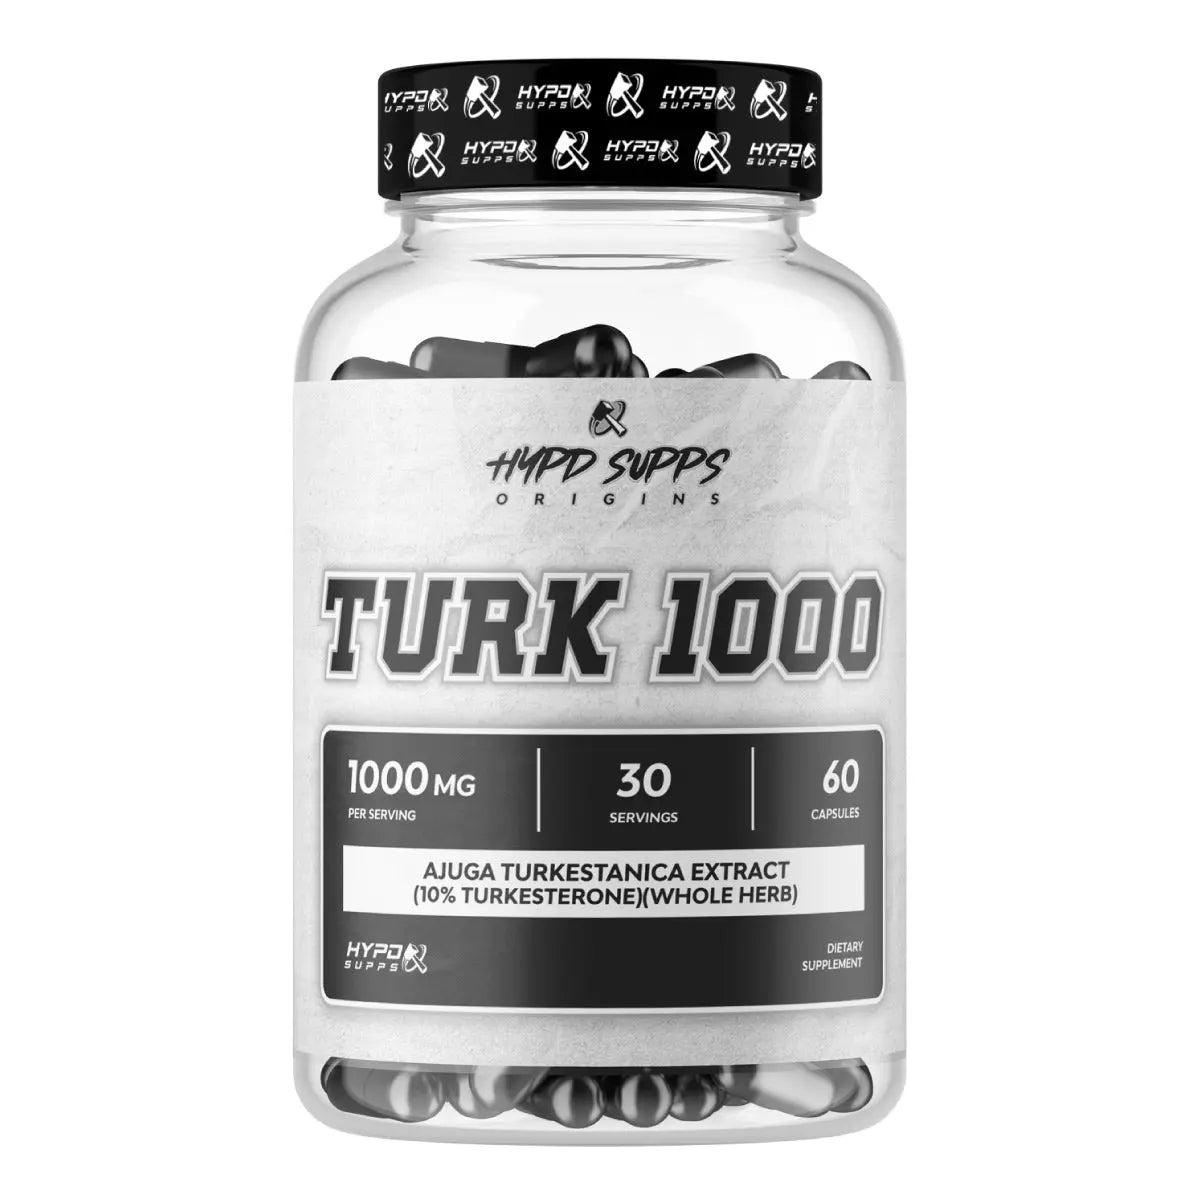 TURK 1000